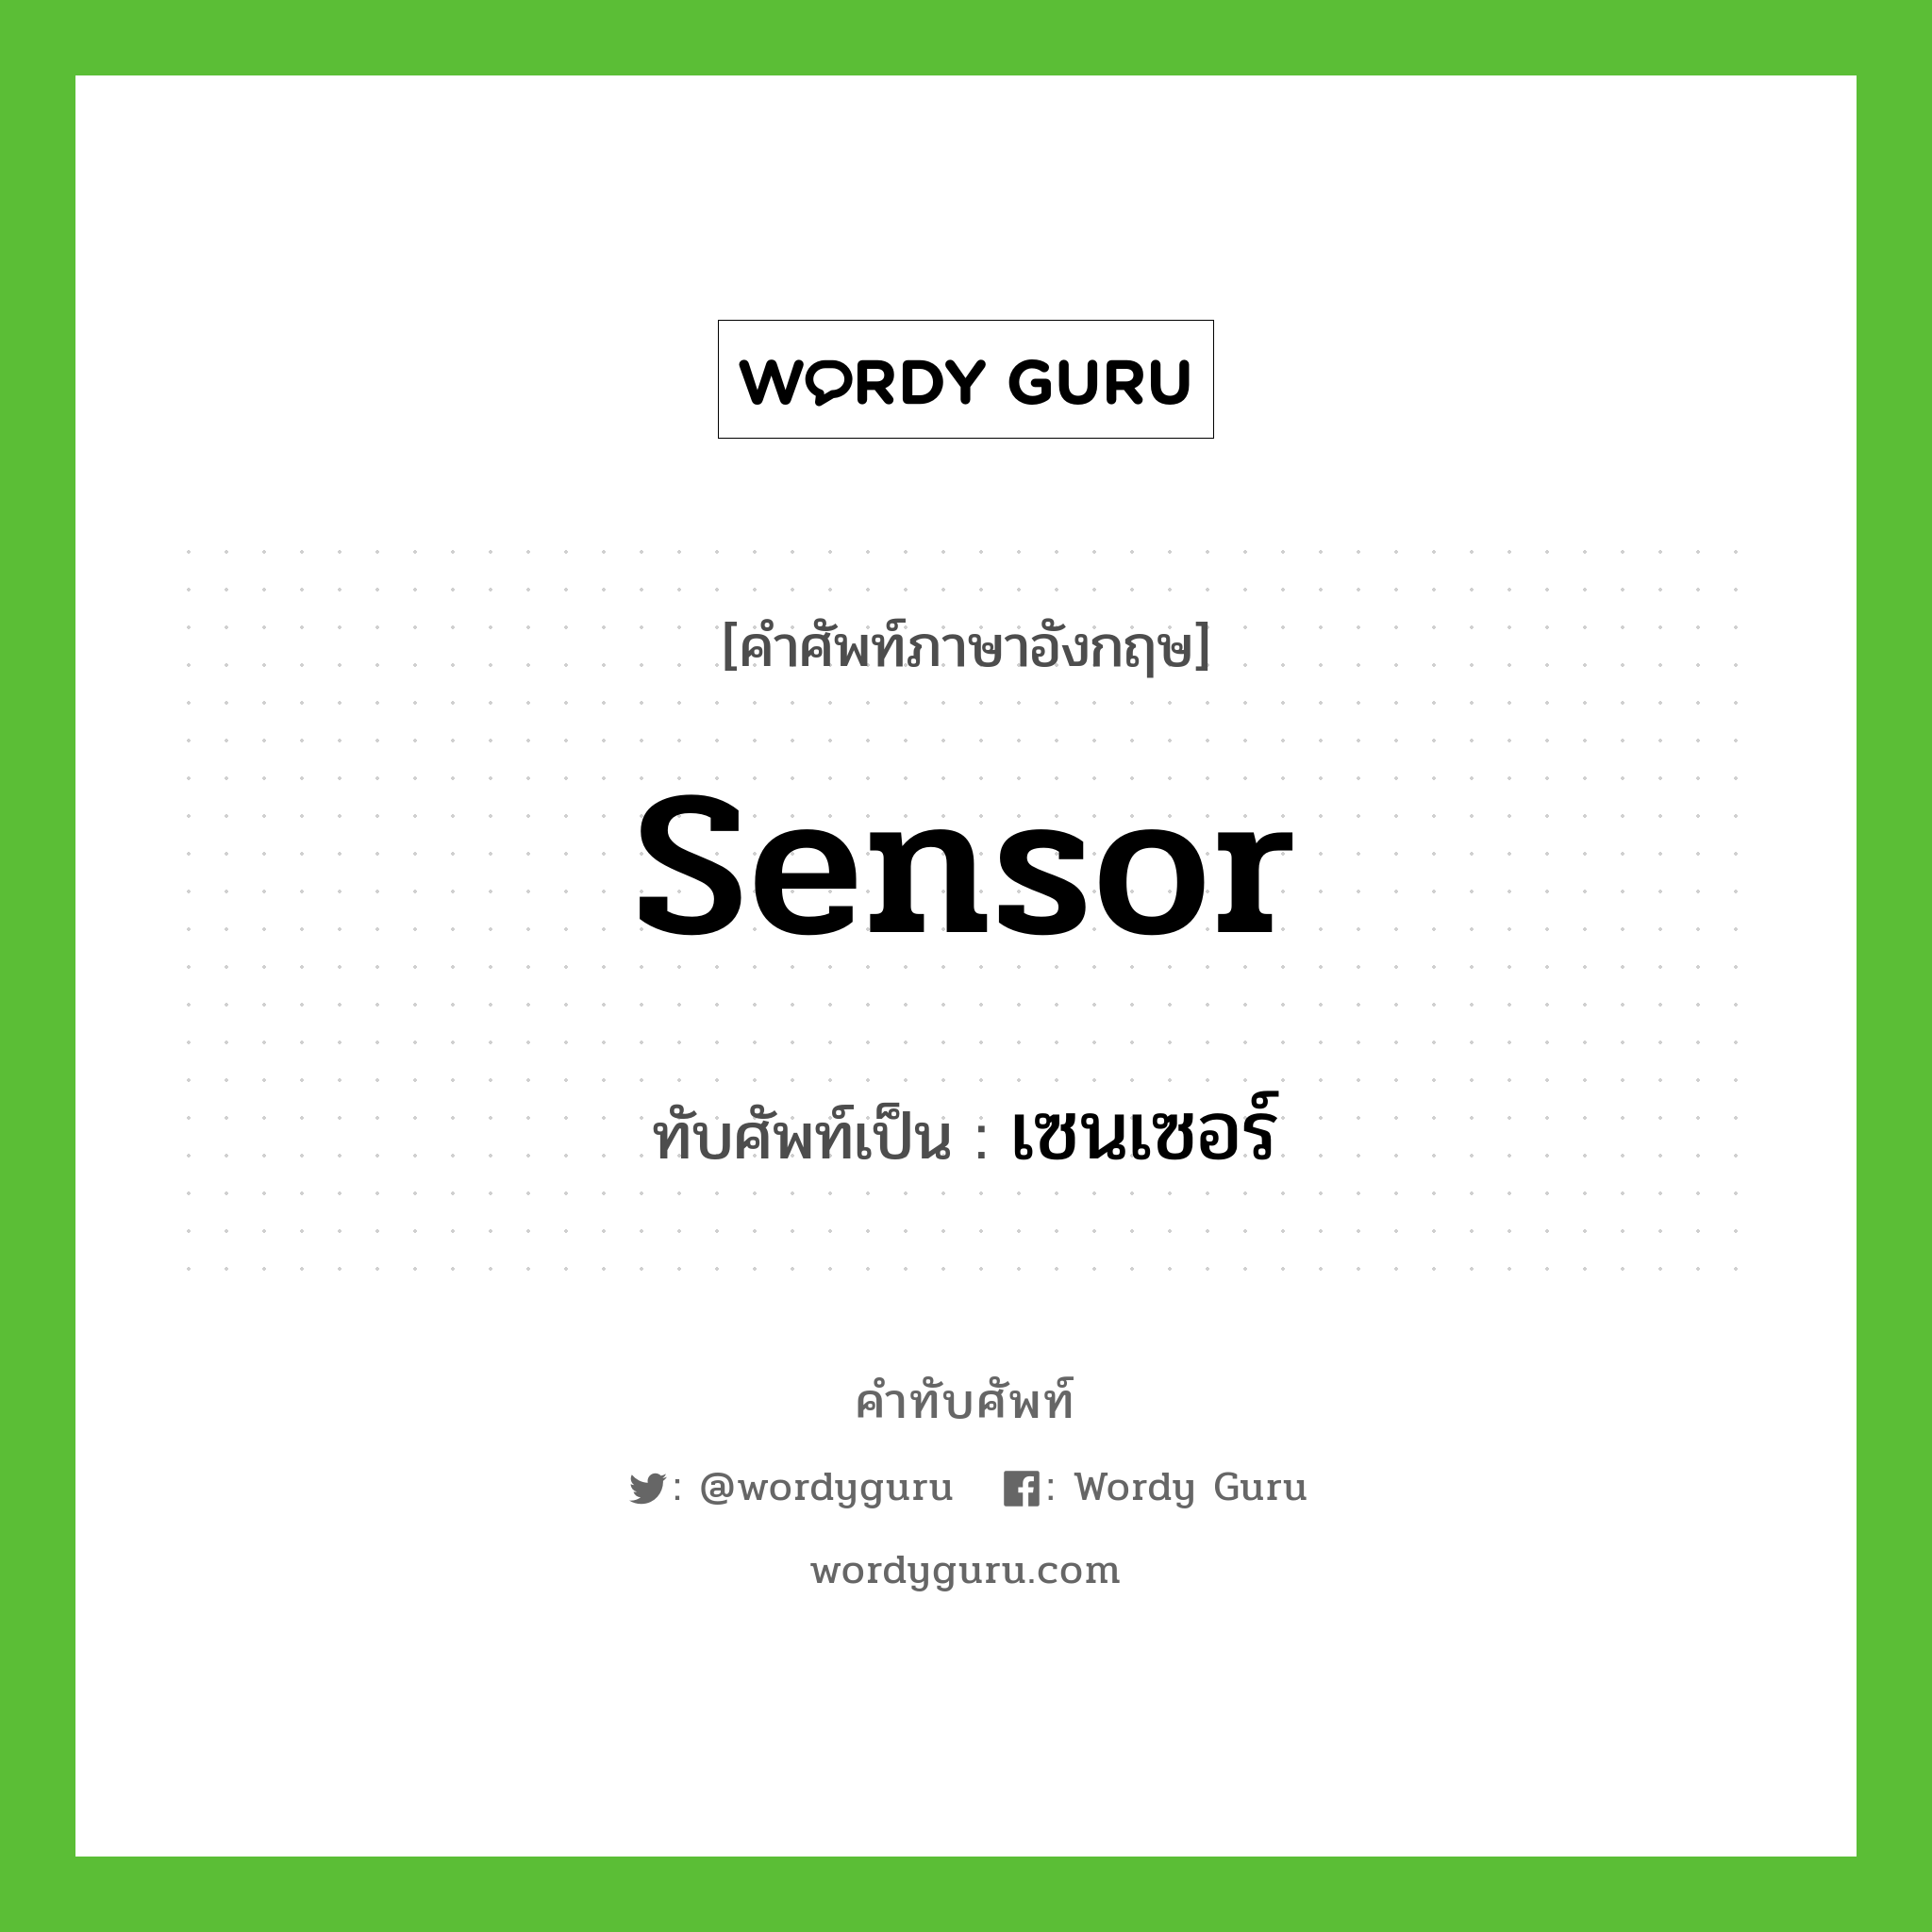 เซนเซอร์ เขียนอย่างไร?, คำศัพท์ภาษาอังกฤษ เซนเซอร์ ทับศัพท์เป็น sensor